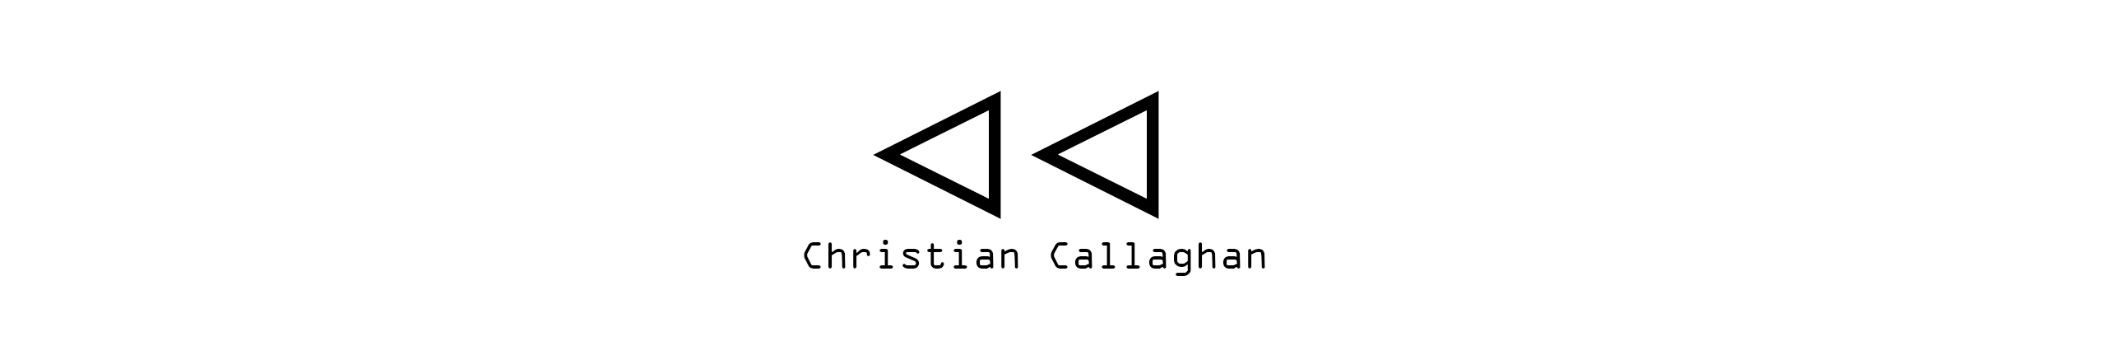 ChristianCallaghan